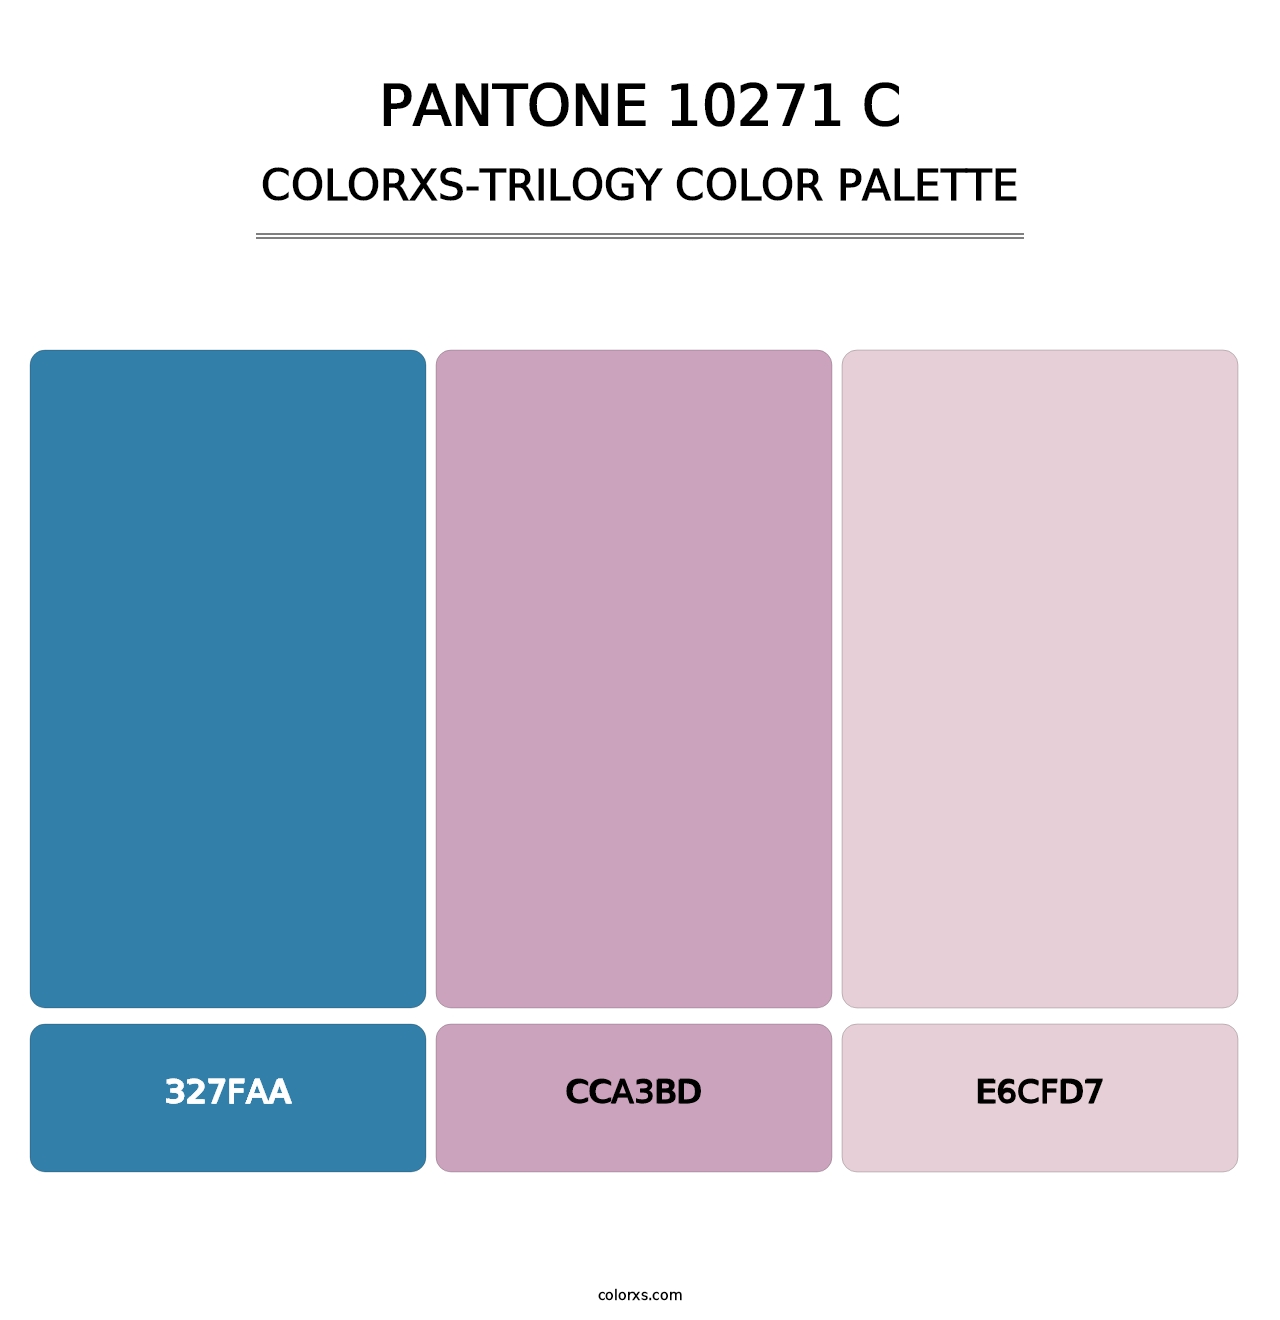 PANTONE 10271 C - Colorxs Trilogy Palette